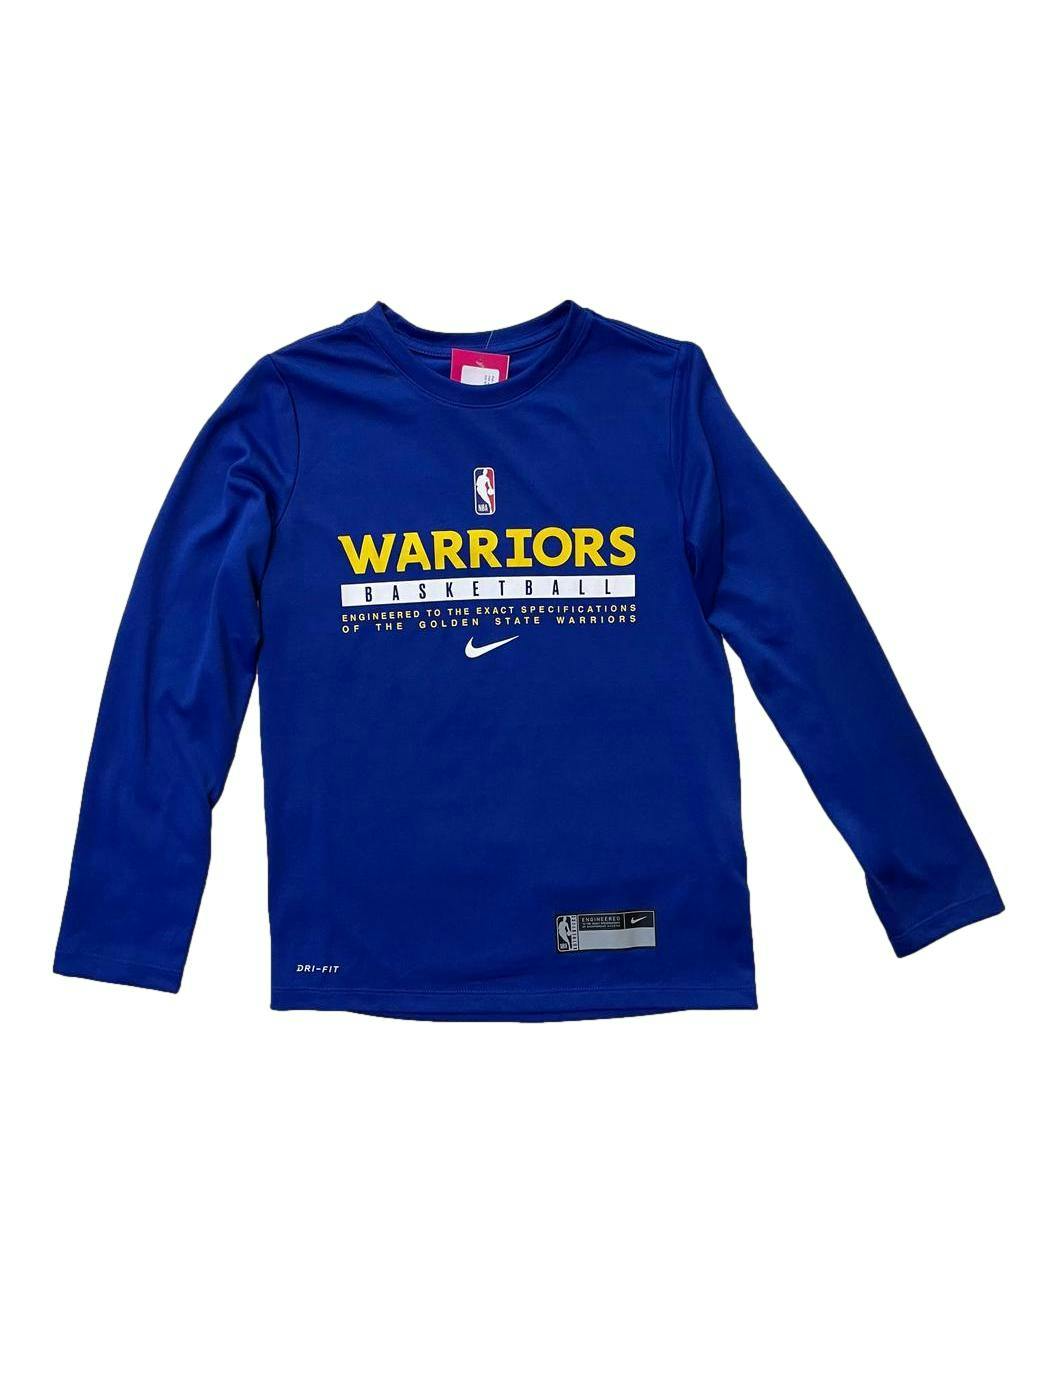 Polo Nike azul NBA Warriors ,tejido suave y ligero con tecnología dri fit que repele el sudor.